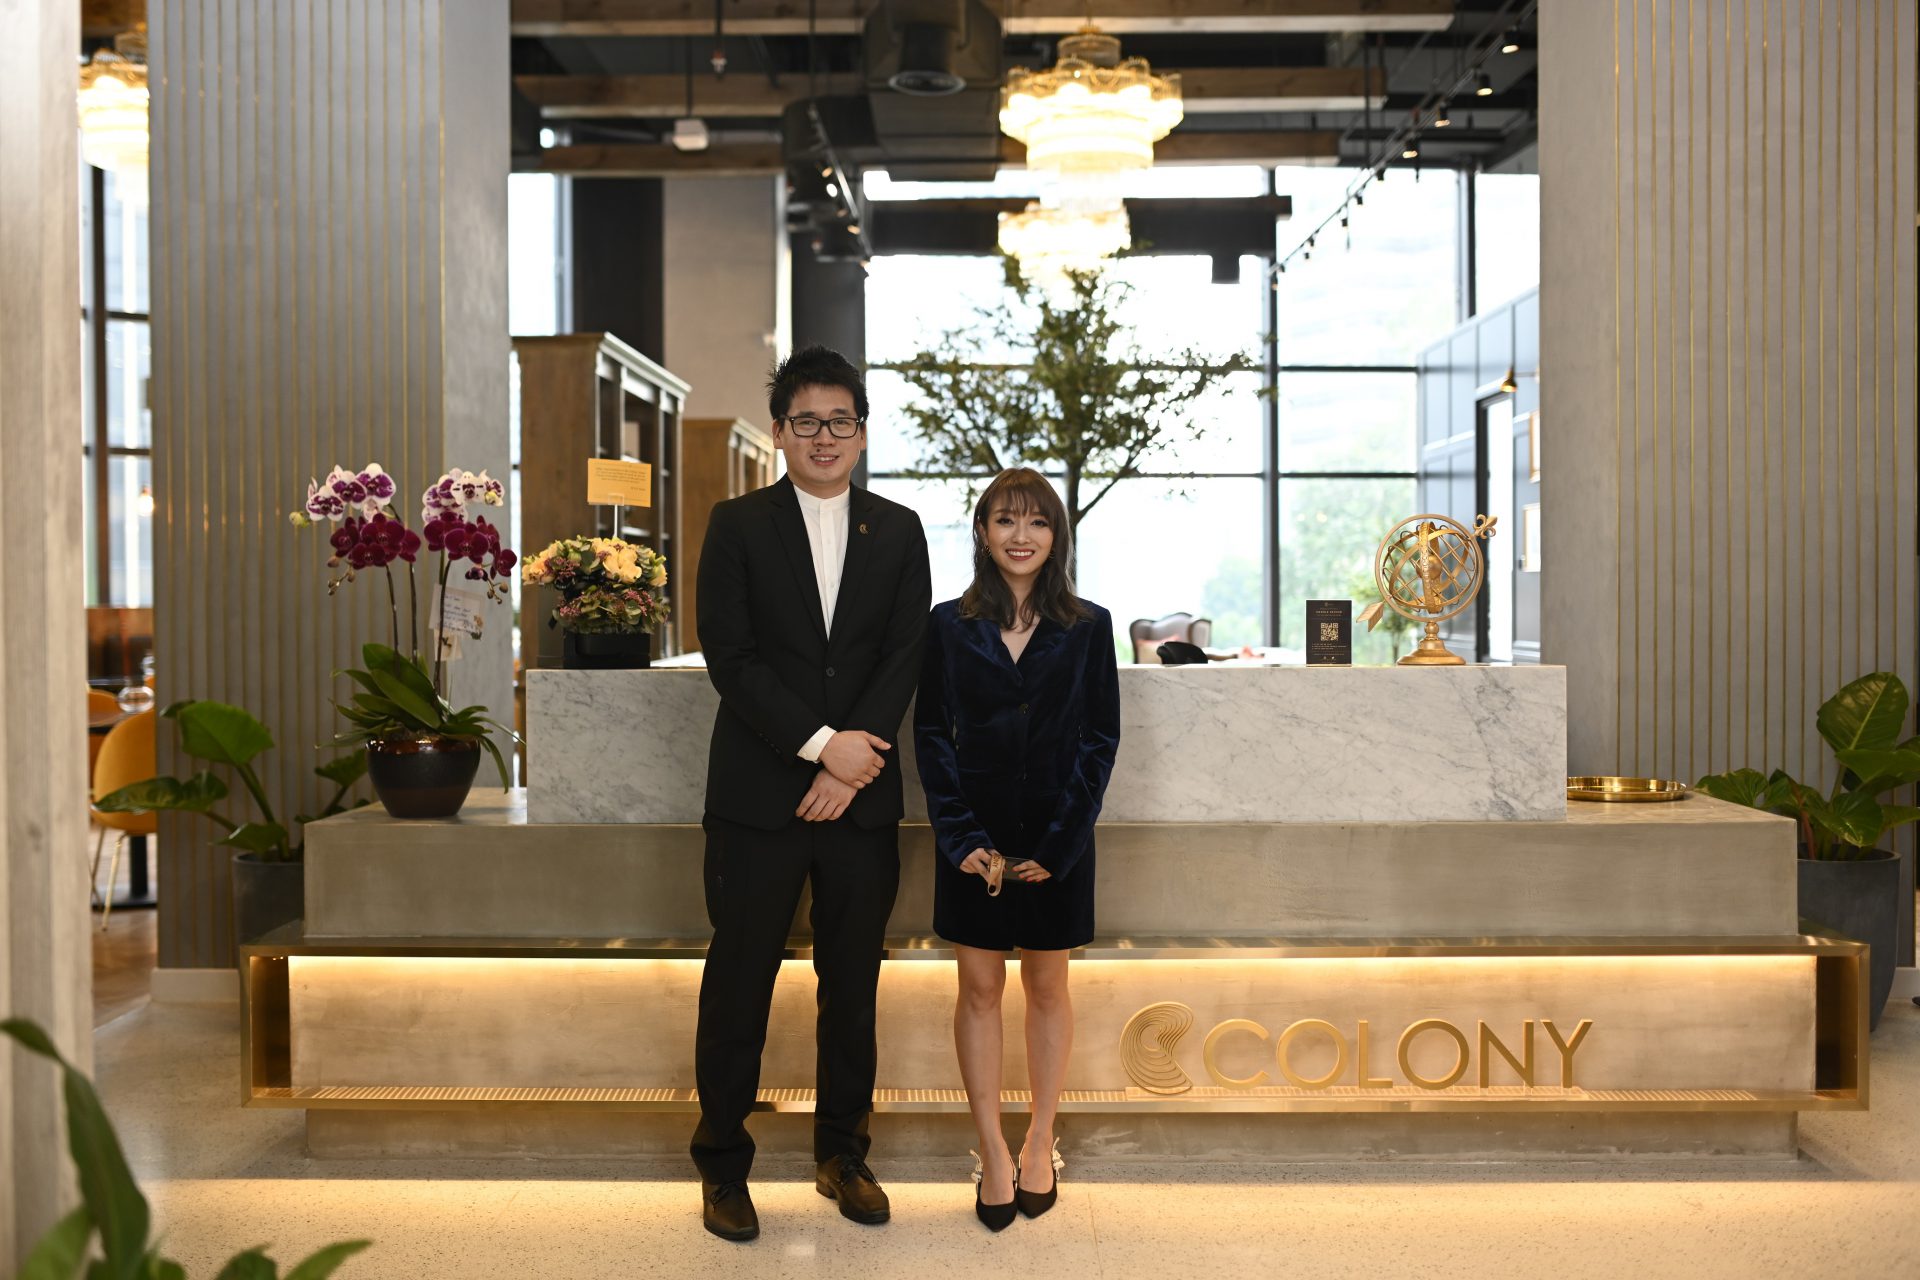 Colony Perkenalkan Ruang Pejabat Ulung Dengan Konsep &#8216;Bespoke Luxury&#8217; Di Star Boulevard, Kuala Lumpur